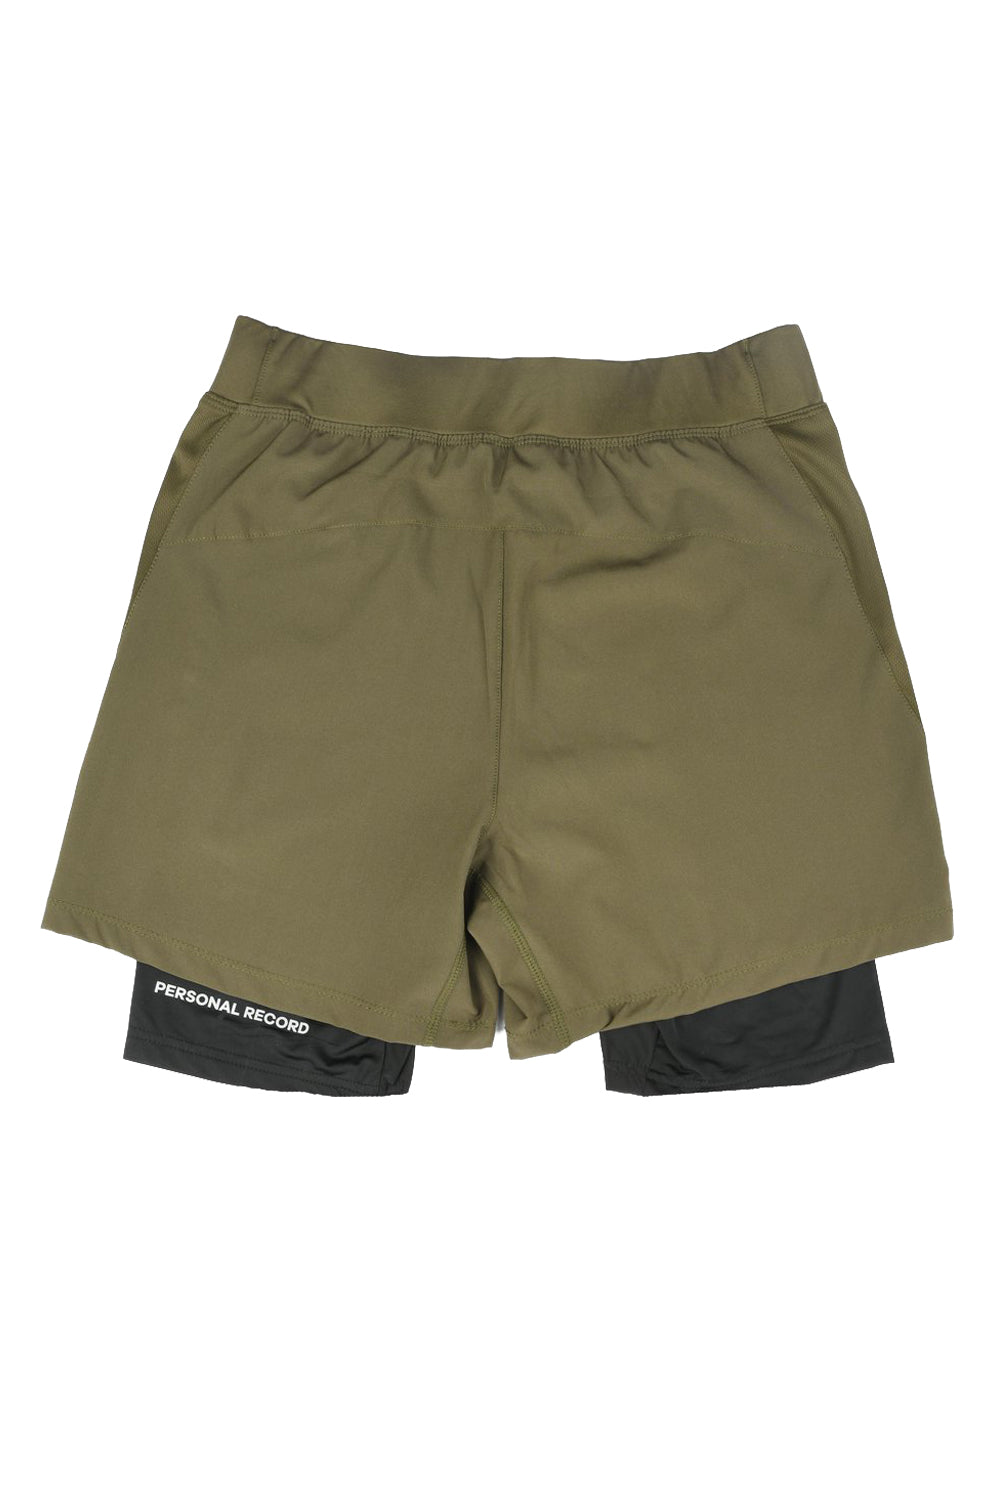 PR Compression Shorts - PR105 - Olive